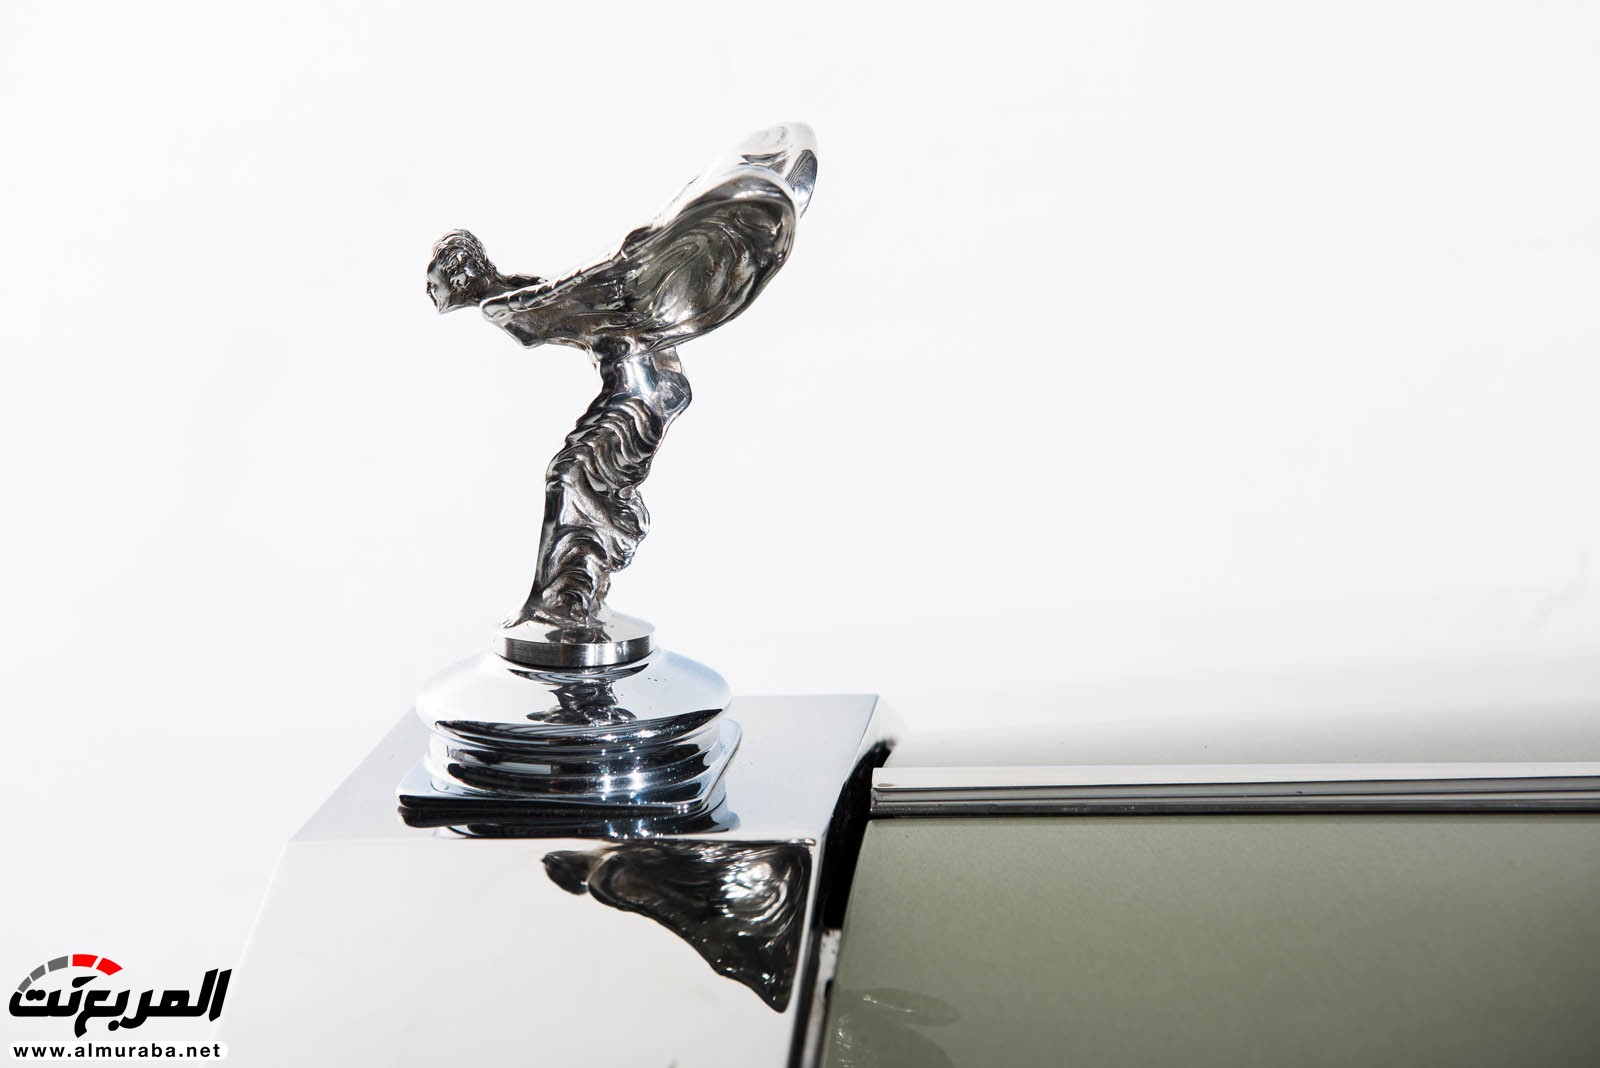 "رولز رويس" سيلفر كلاود 1959 ذات هيكلة الواجن تتوجه لتباع في مزاد عالمي Rolls-Royce Silver Cloud 66